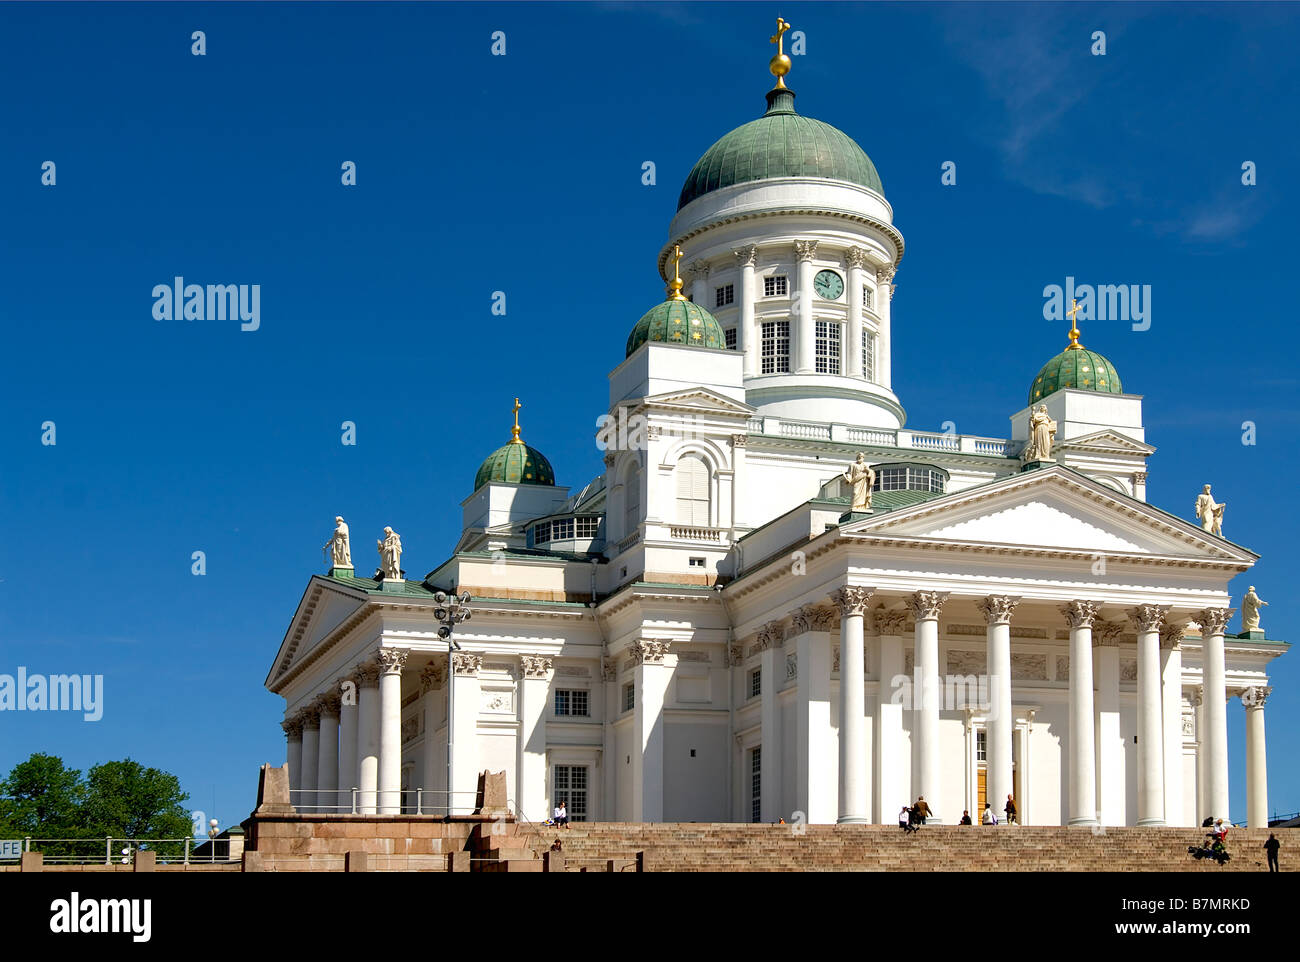 The Tuomiokirkko Cathedral of Helsinki, Finland Stock Photo